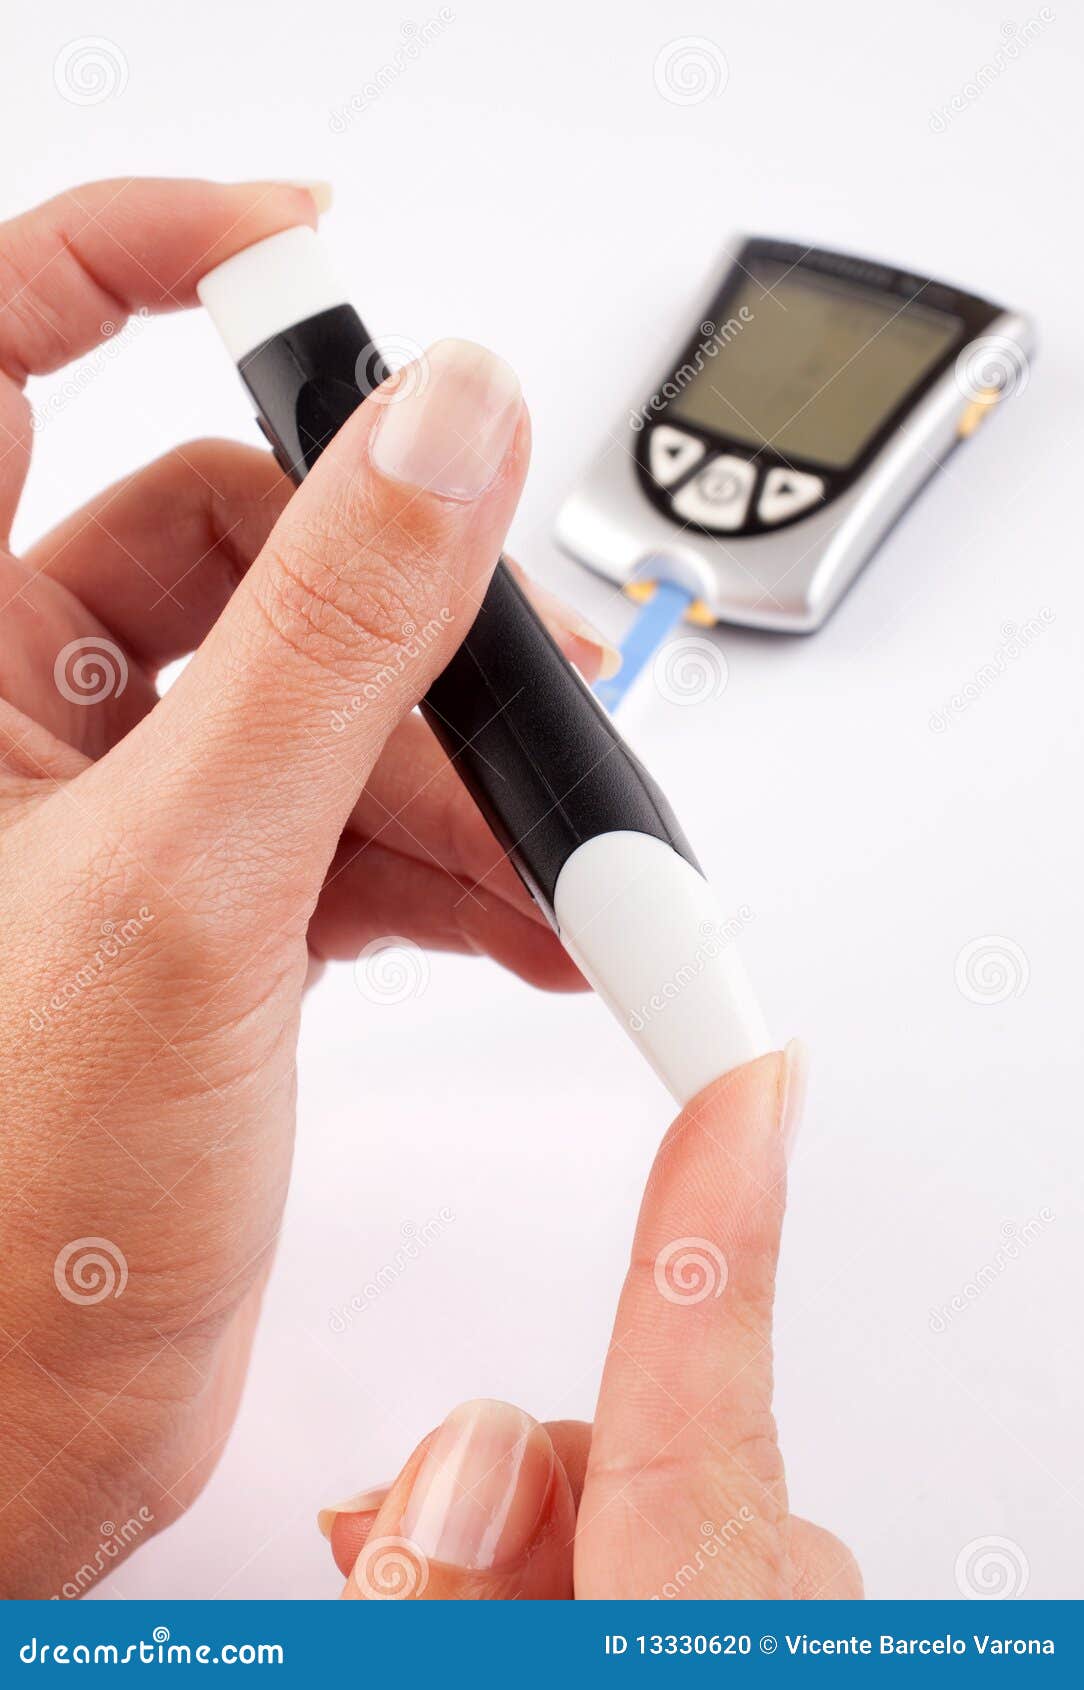 diabetic woman